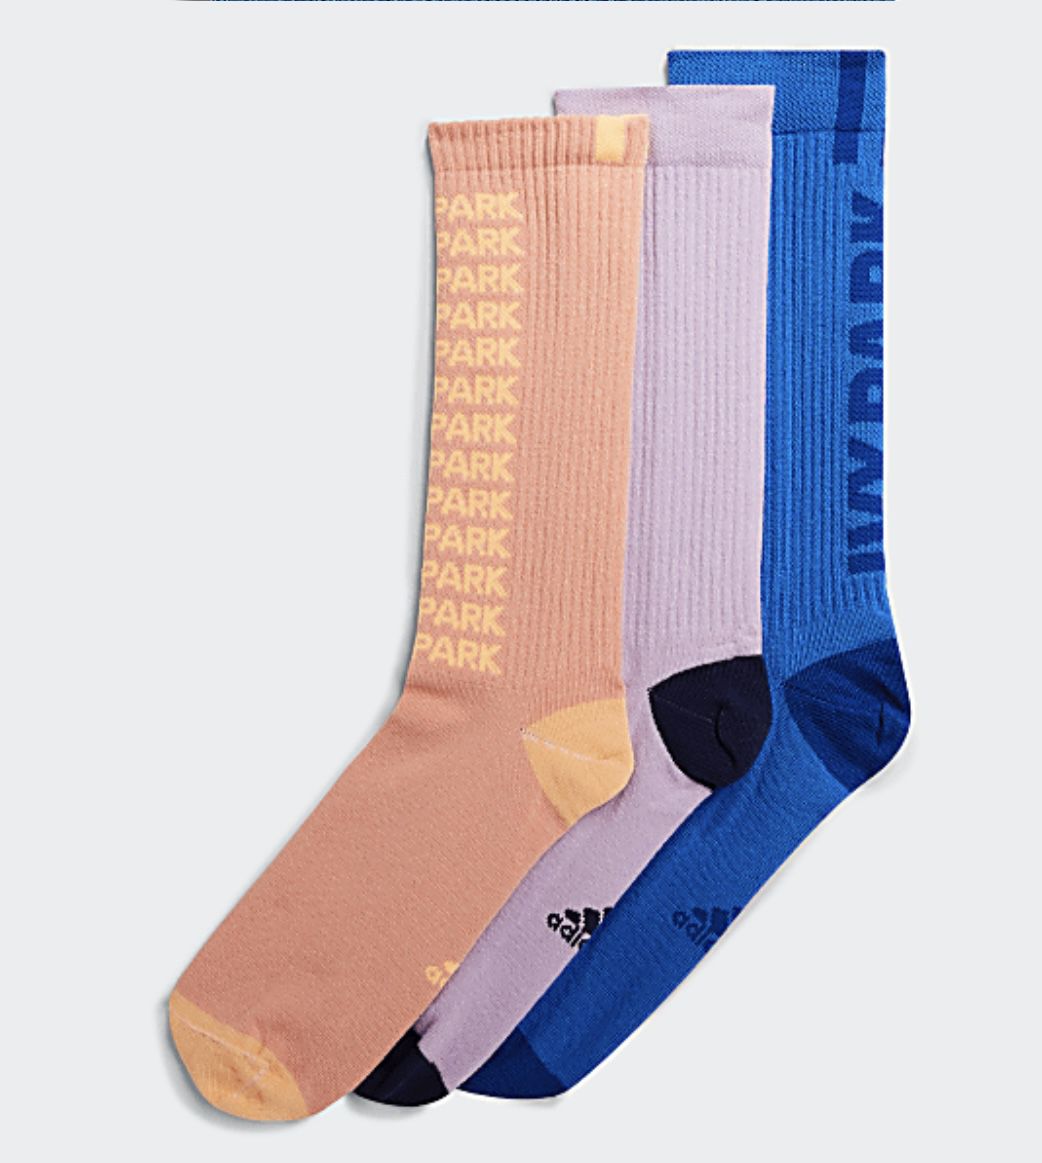 Adidas x IVP Socks  